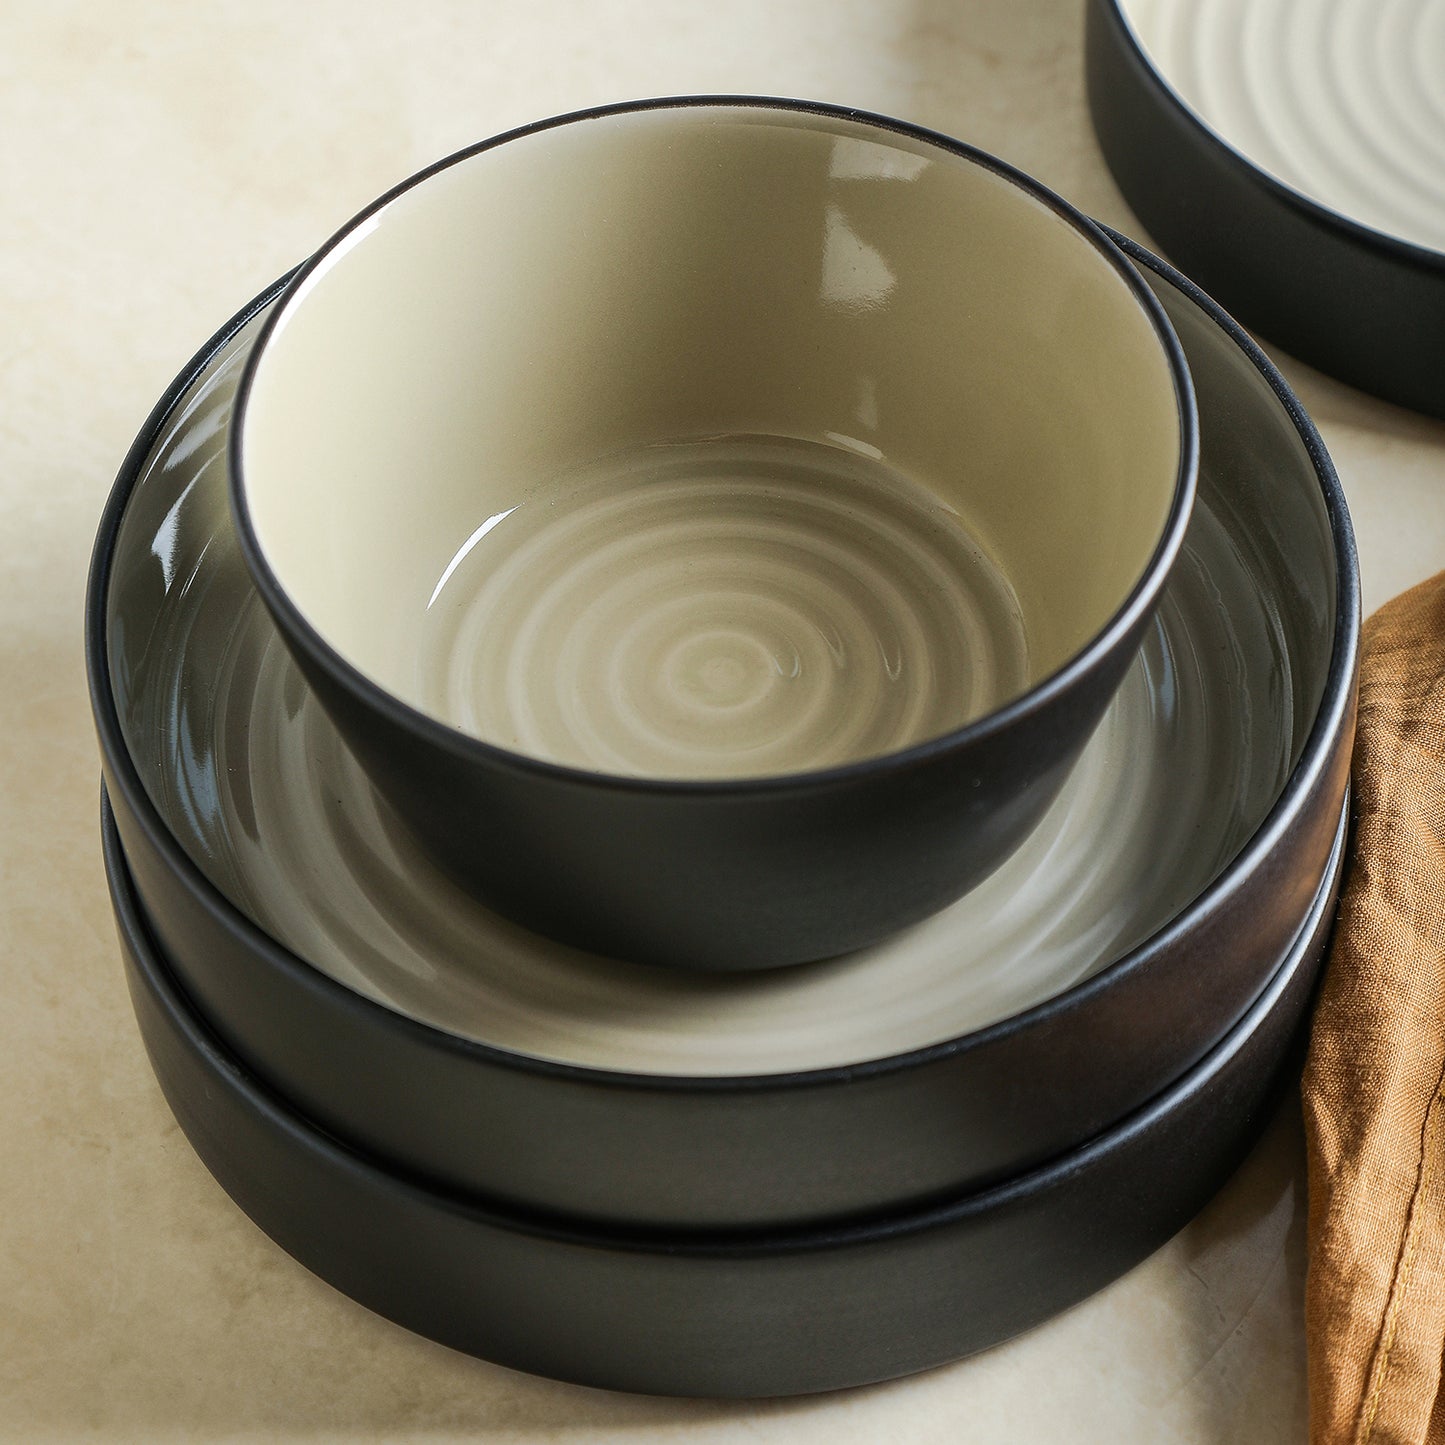 Elica Stoneware Dinnerware Set - Beige And Black